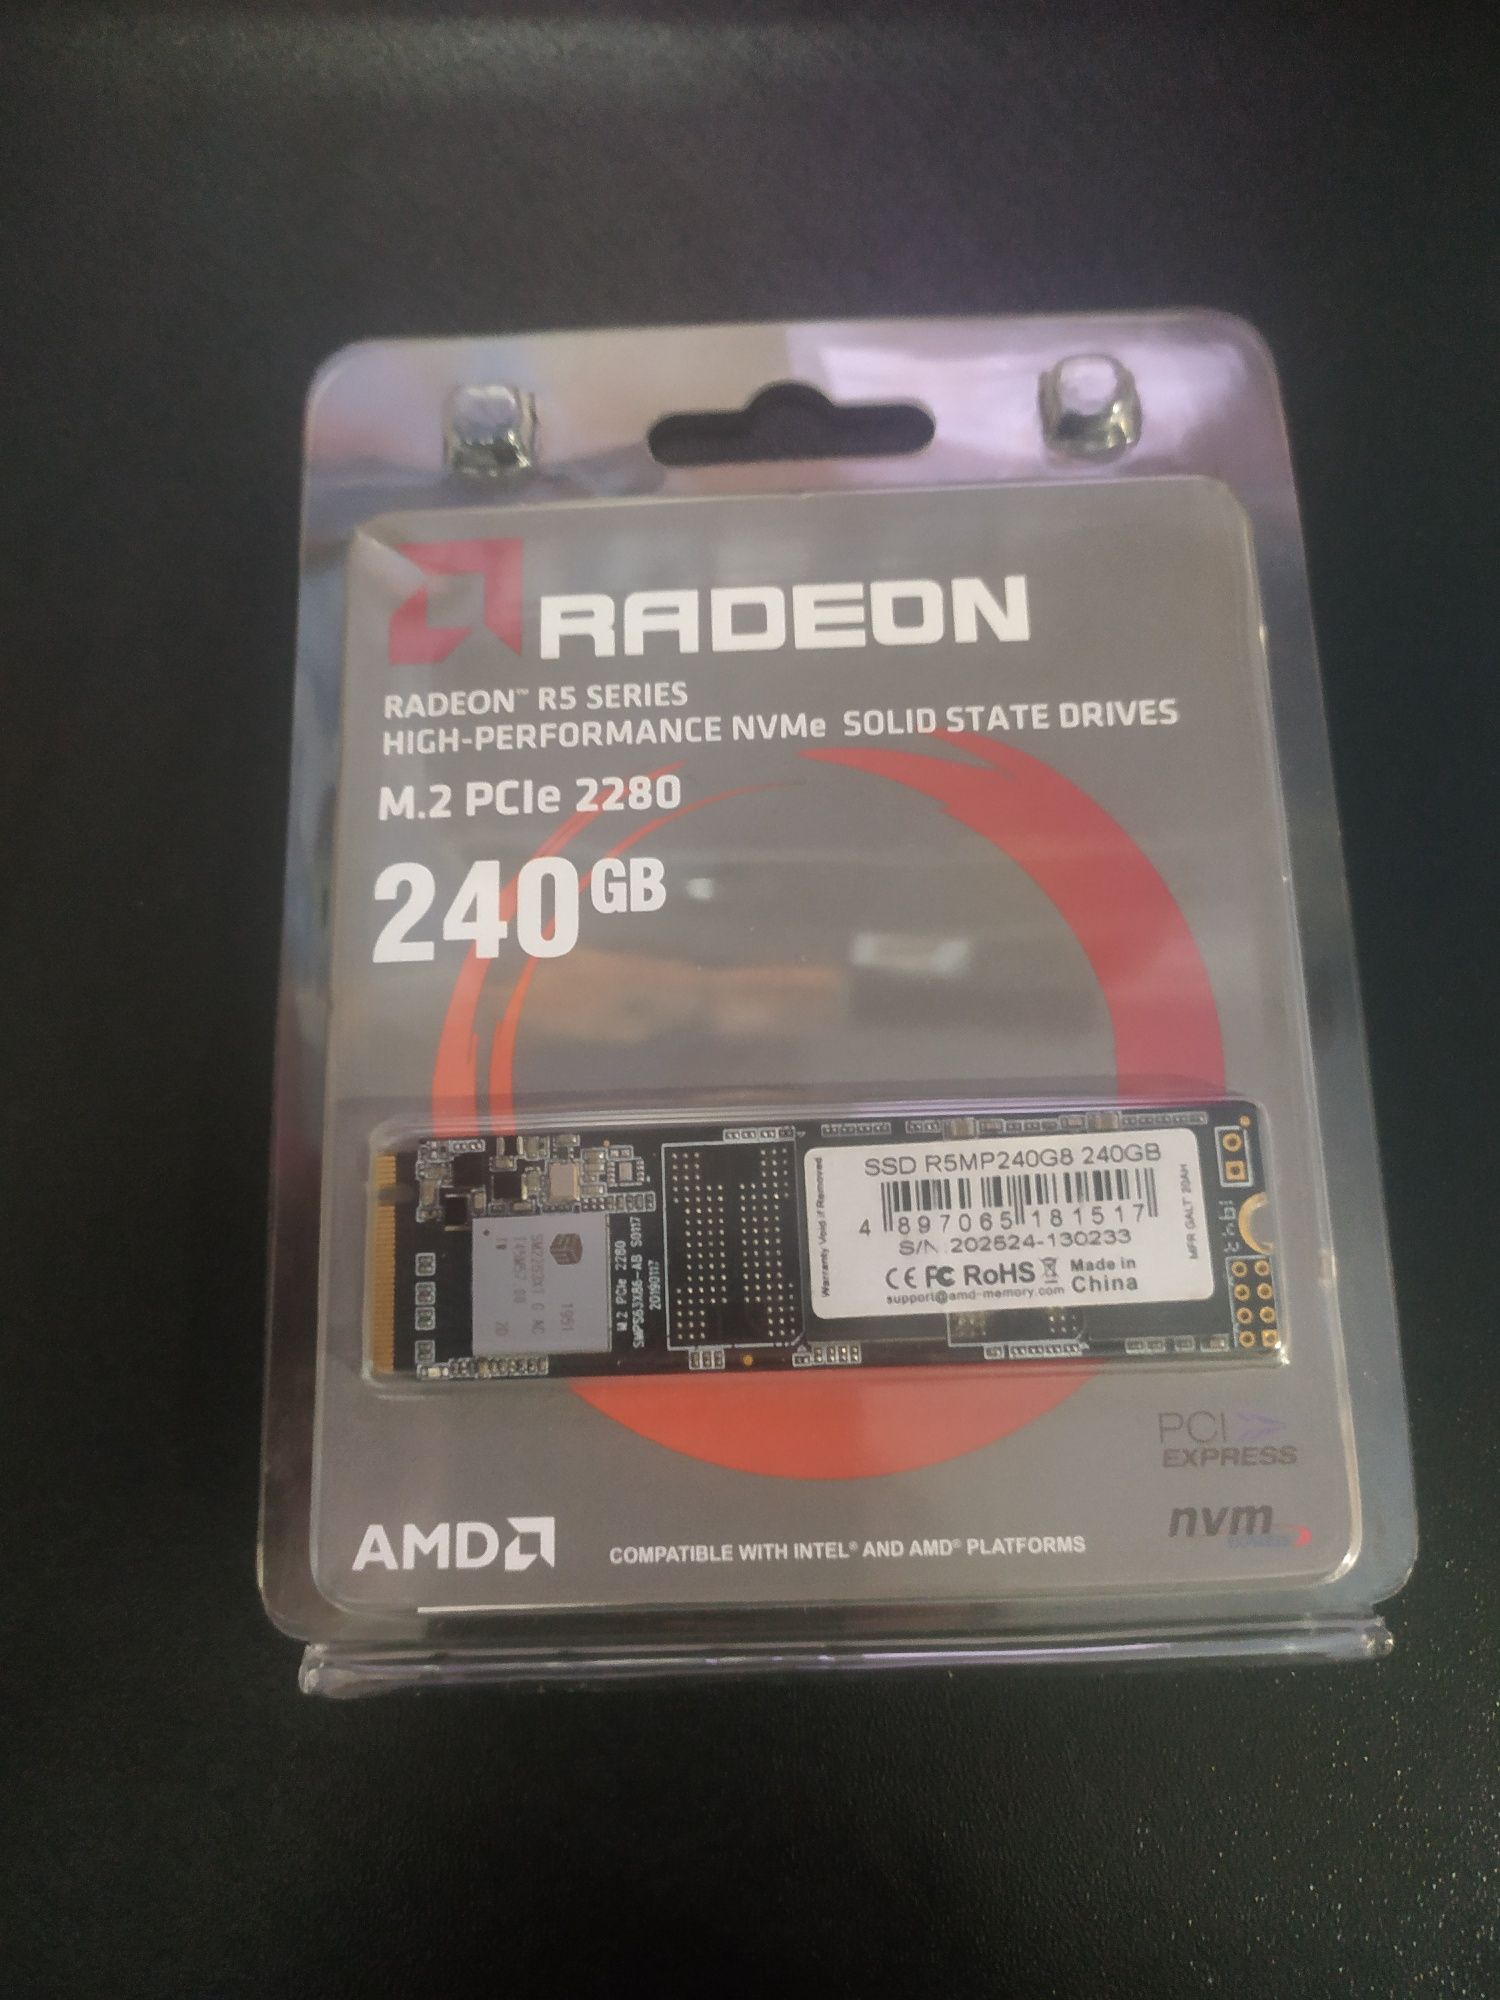 SSD 240Gb AMD R5MP240G8 M.2 2280, NVMe